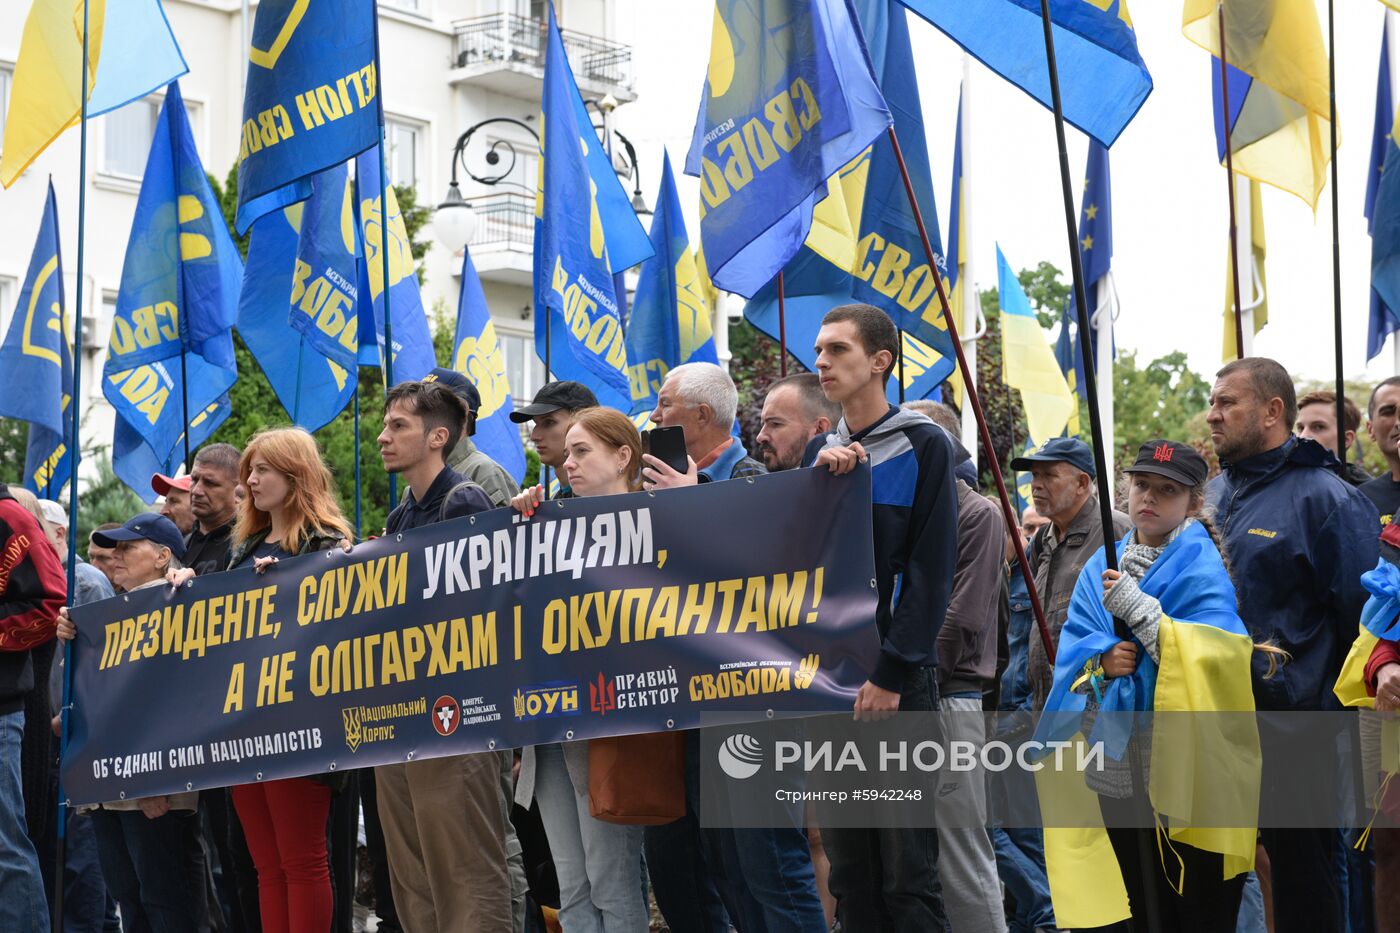 Акция националистов в Киеве "Украина превыше всего"